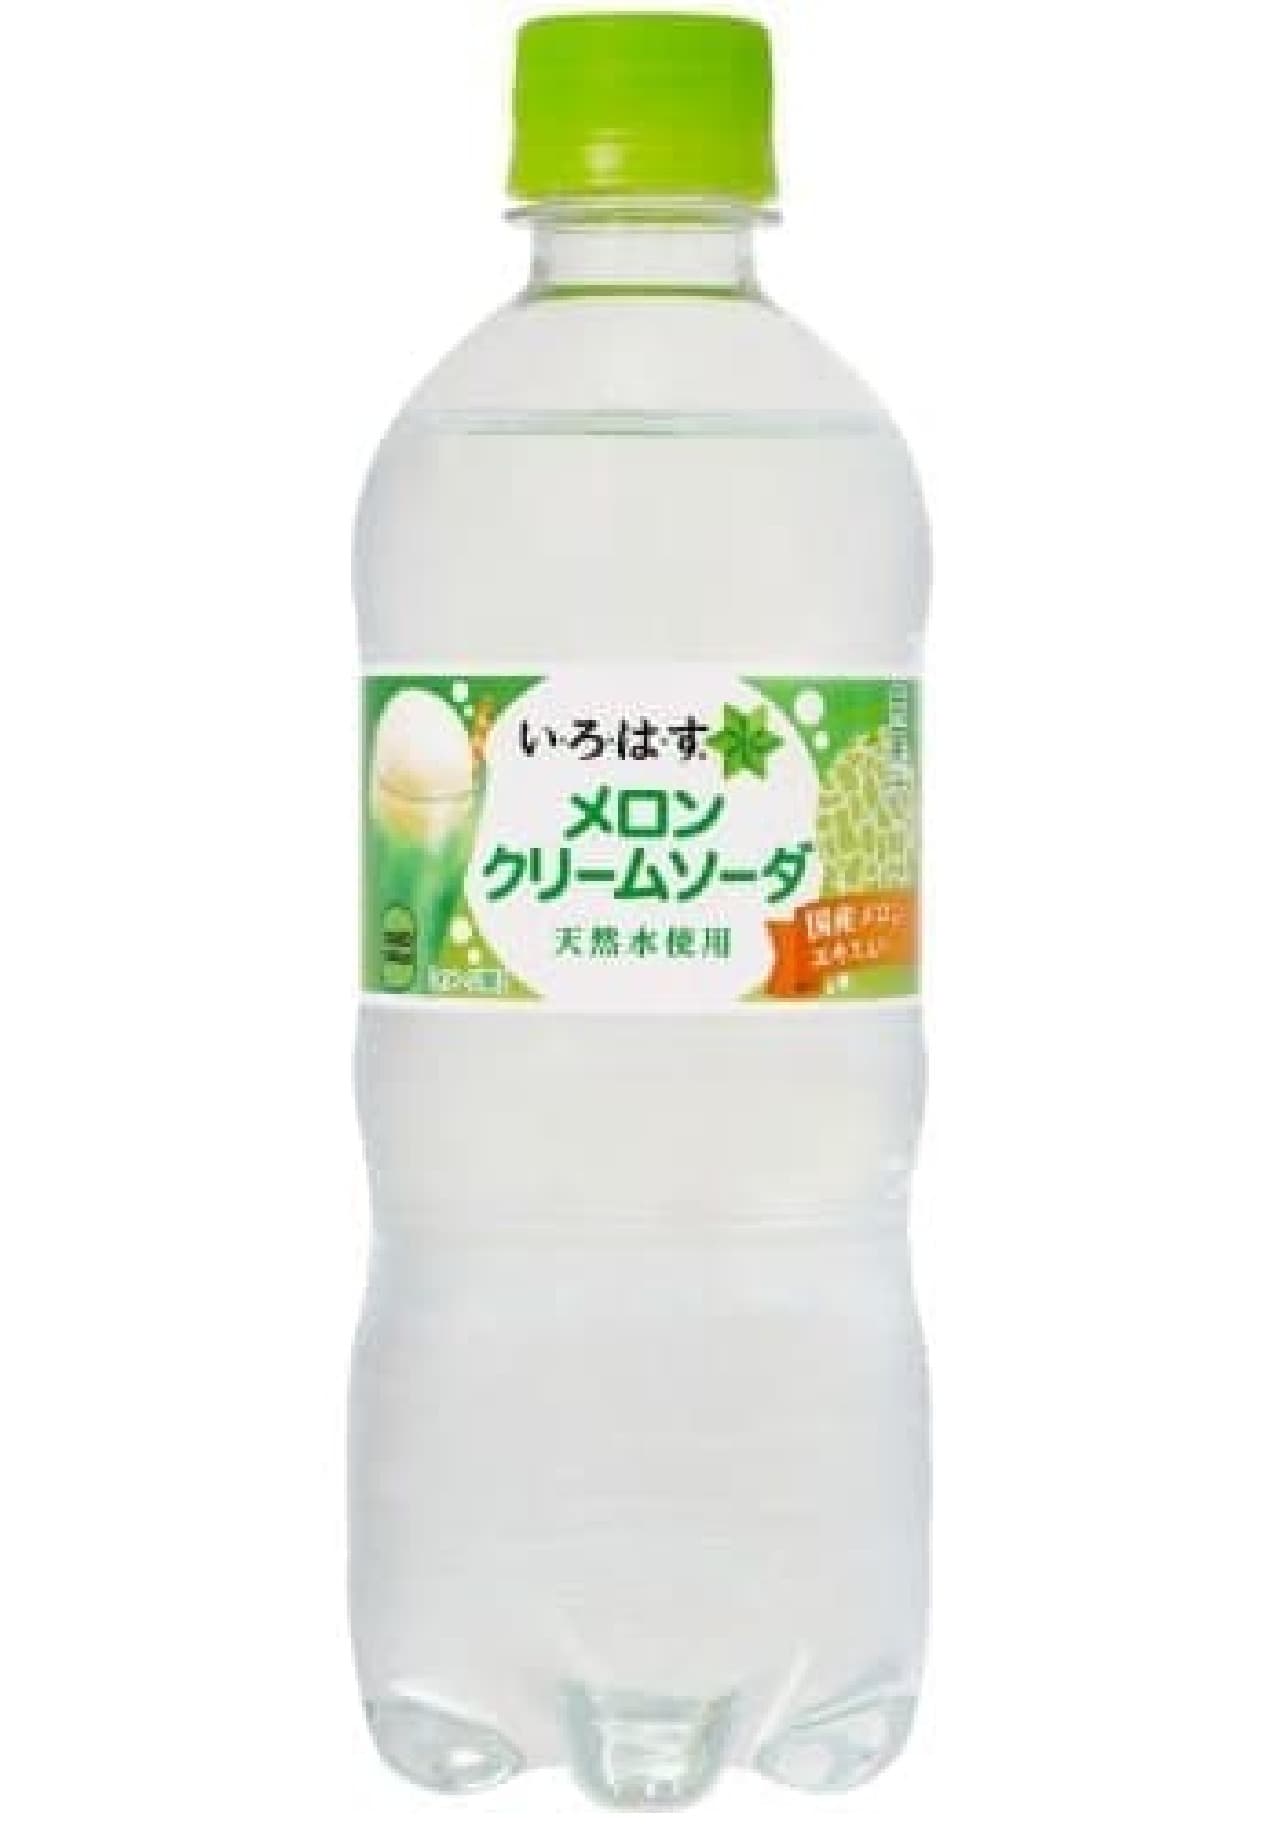 "I Lohas Melon Cream Soda" using domestic melon extract